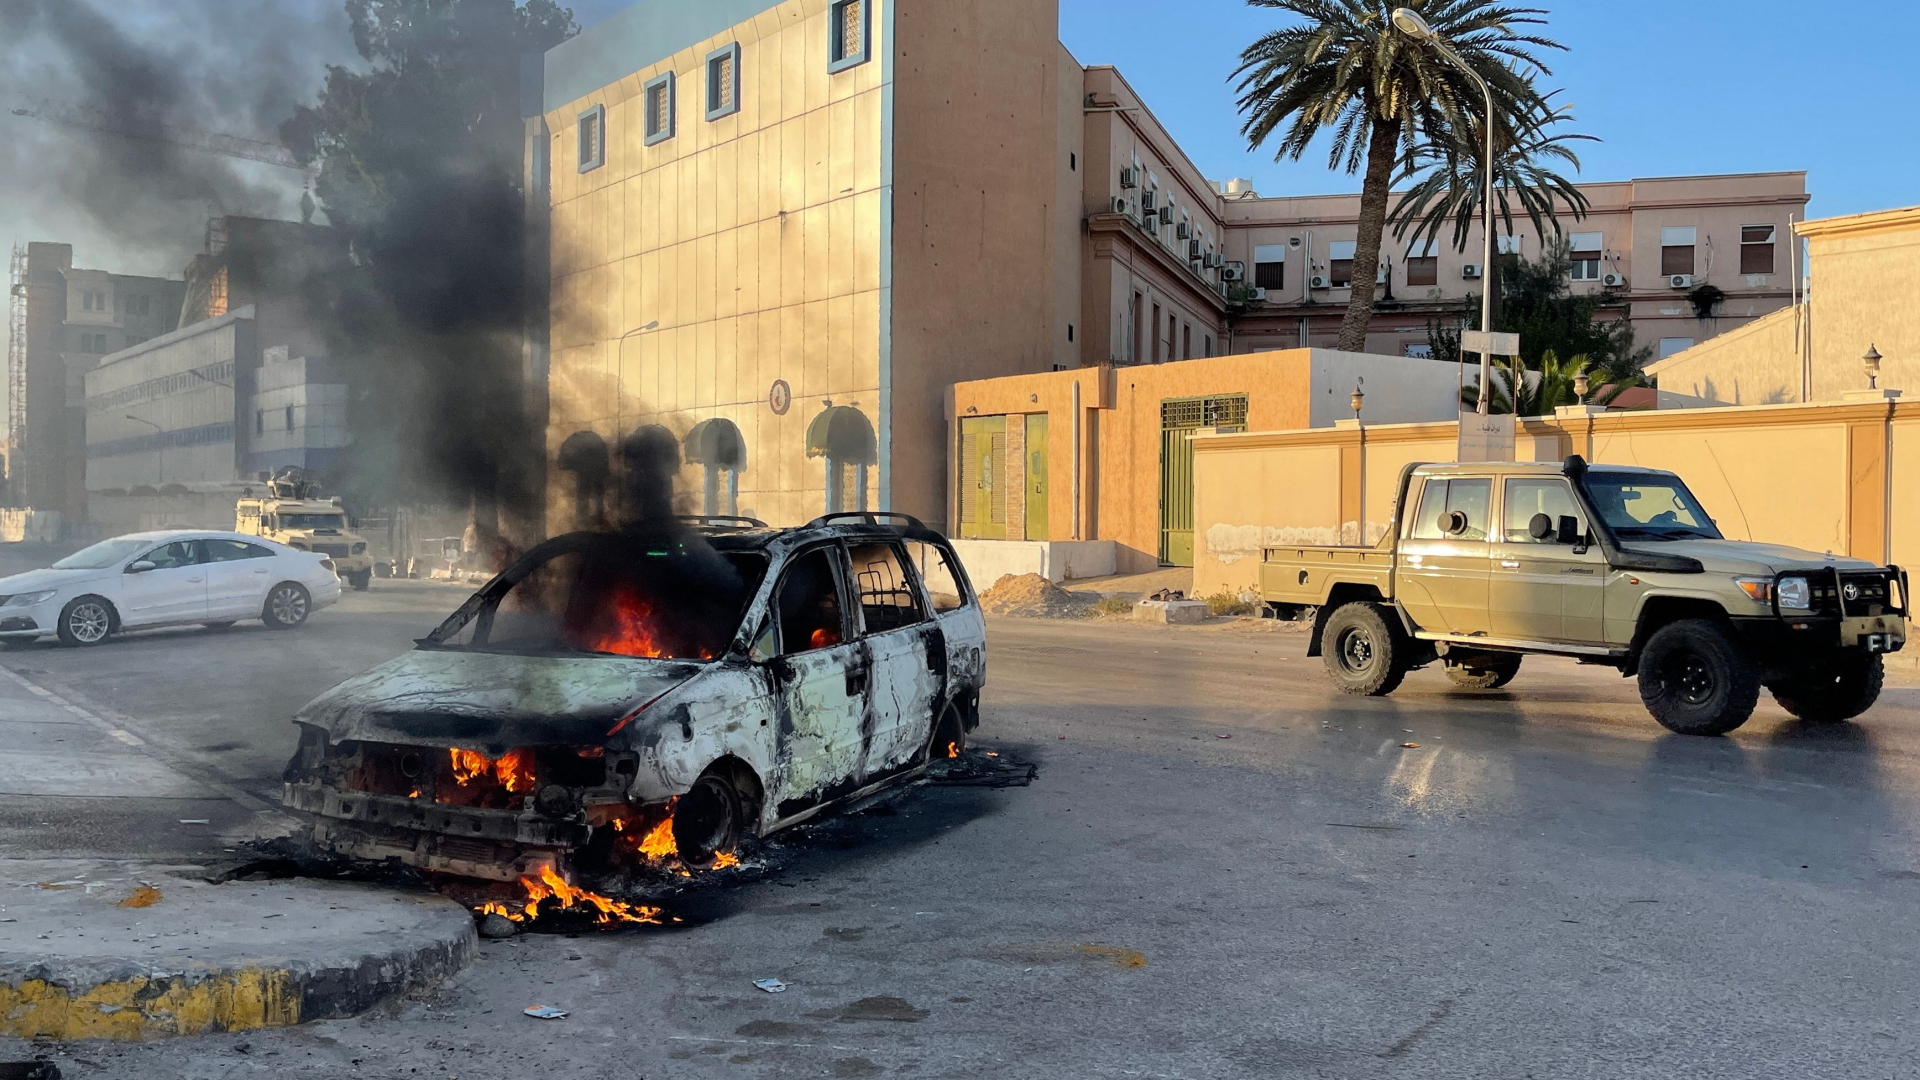 Kämpfe in Libyen: Drohgebärden oder Entscheidungsschlacht?